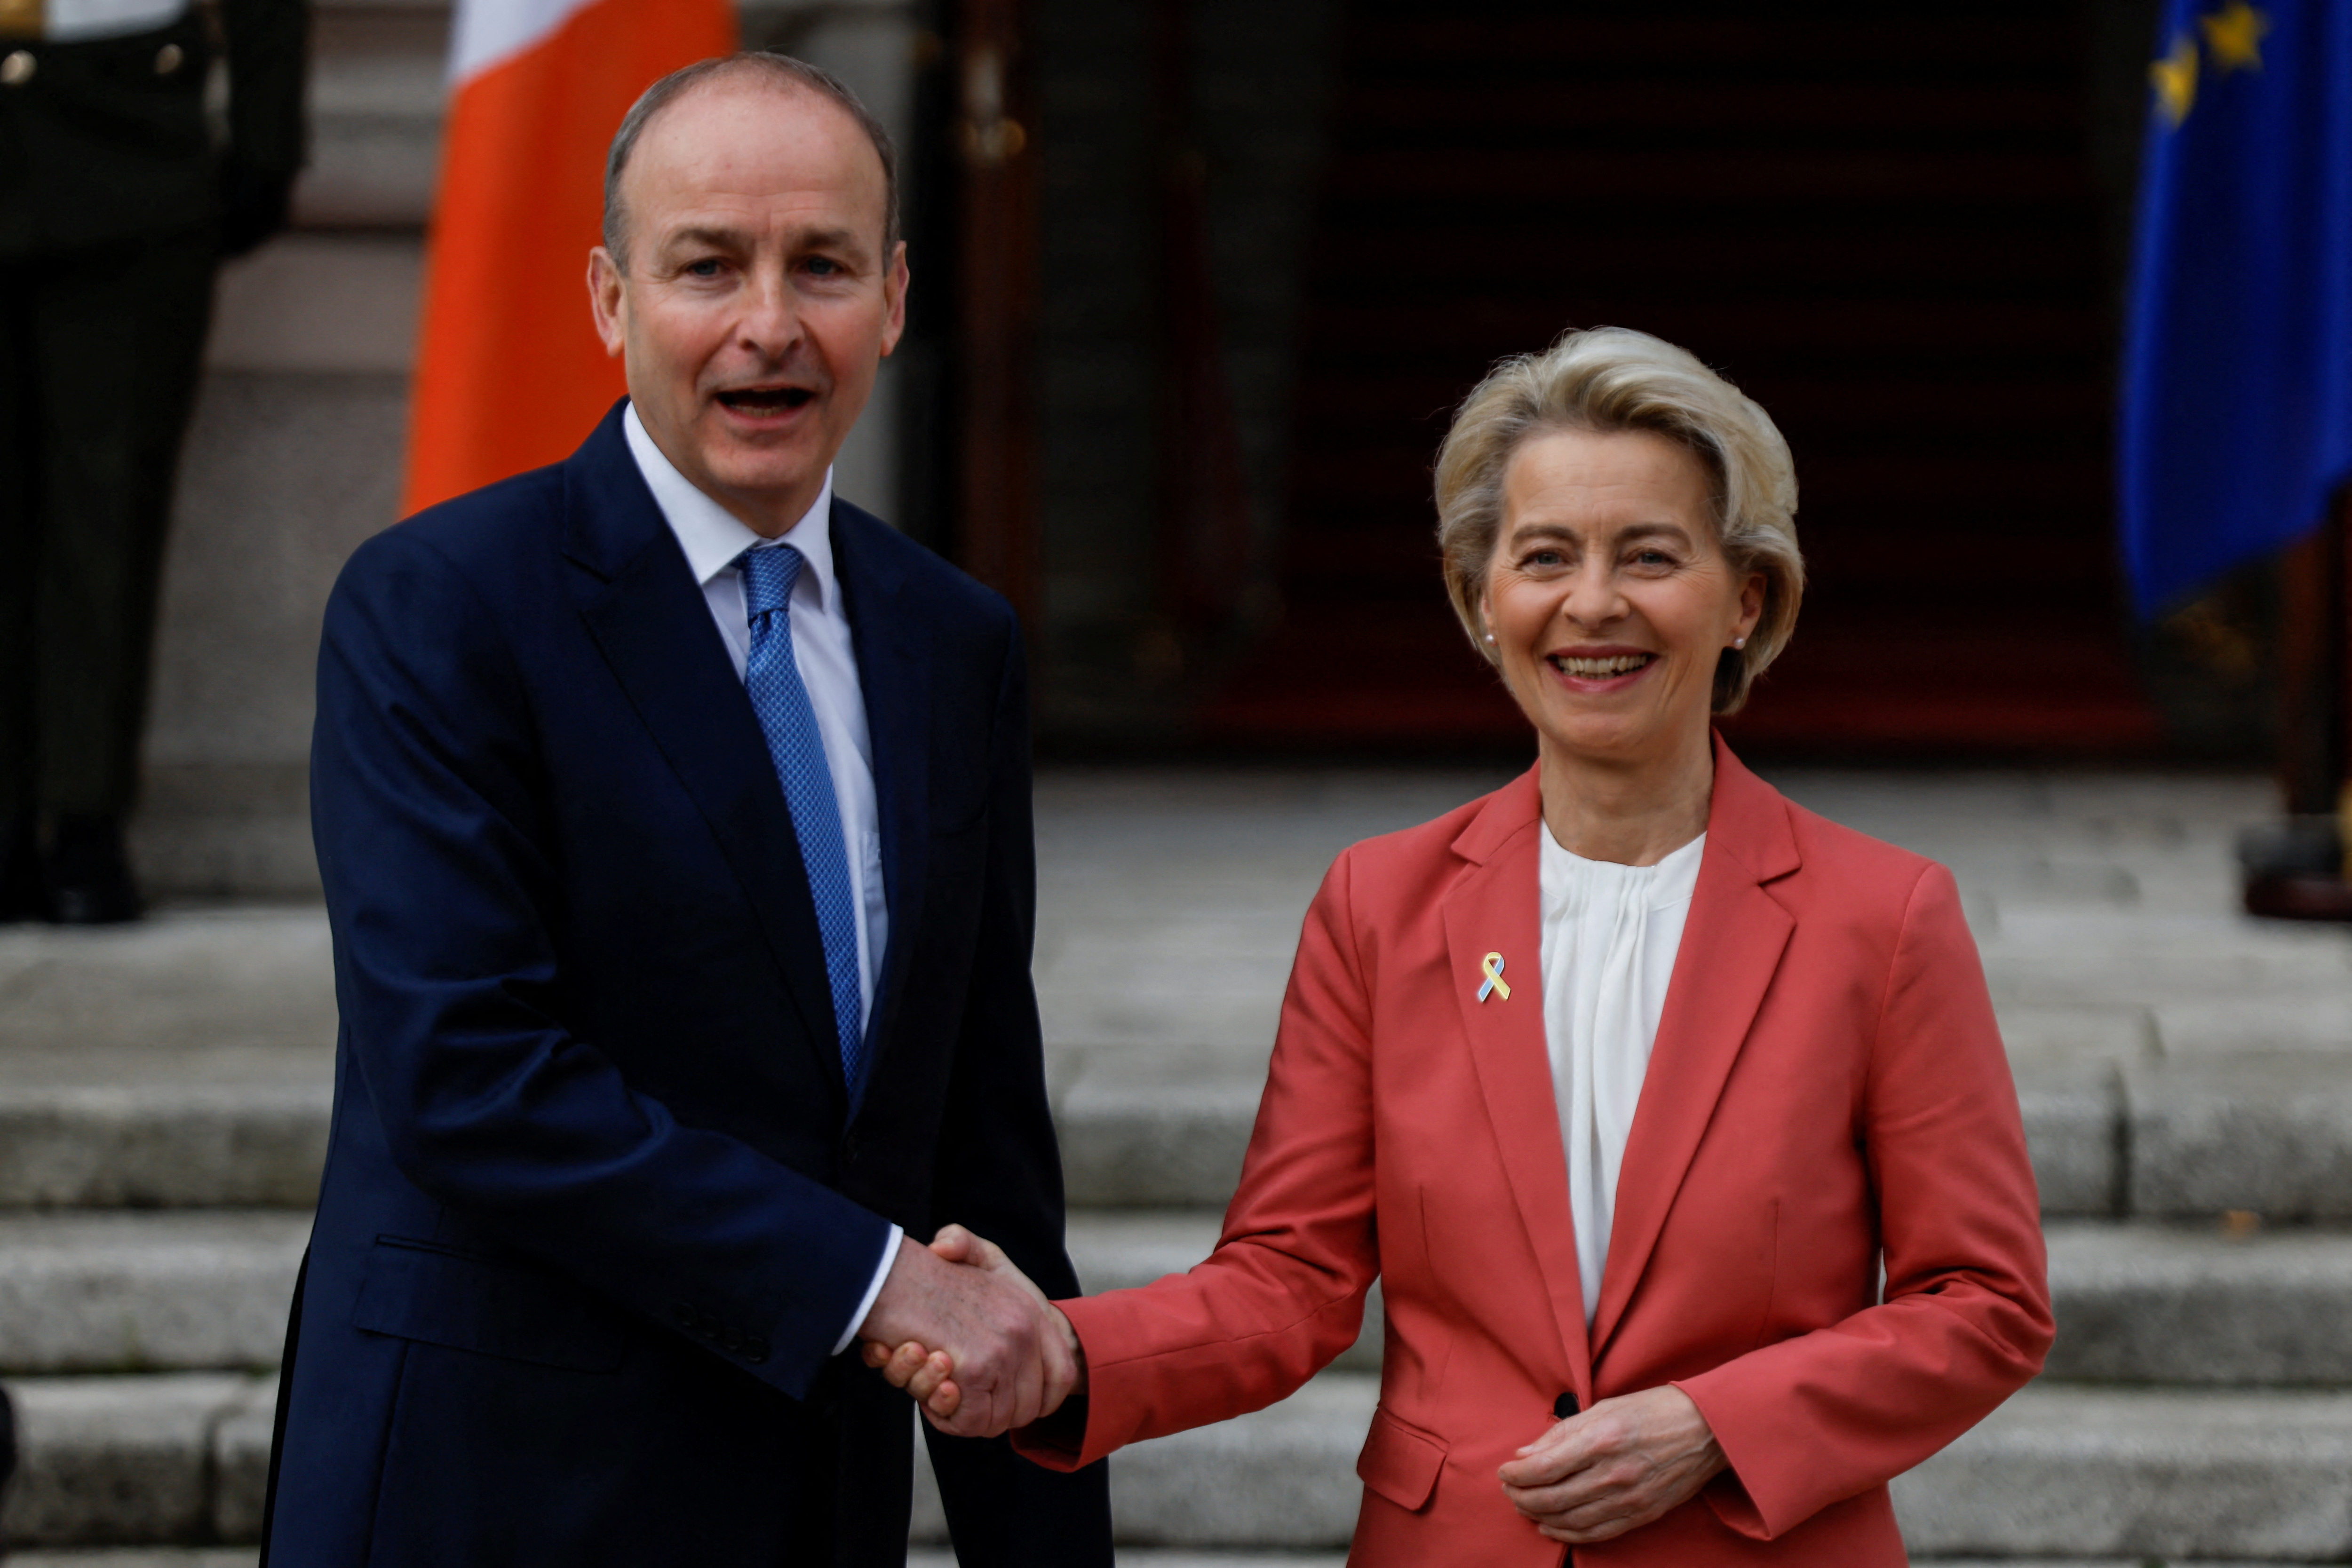 European Commission President von der Leyen meets Ireland's PM Micheal Martin